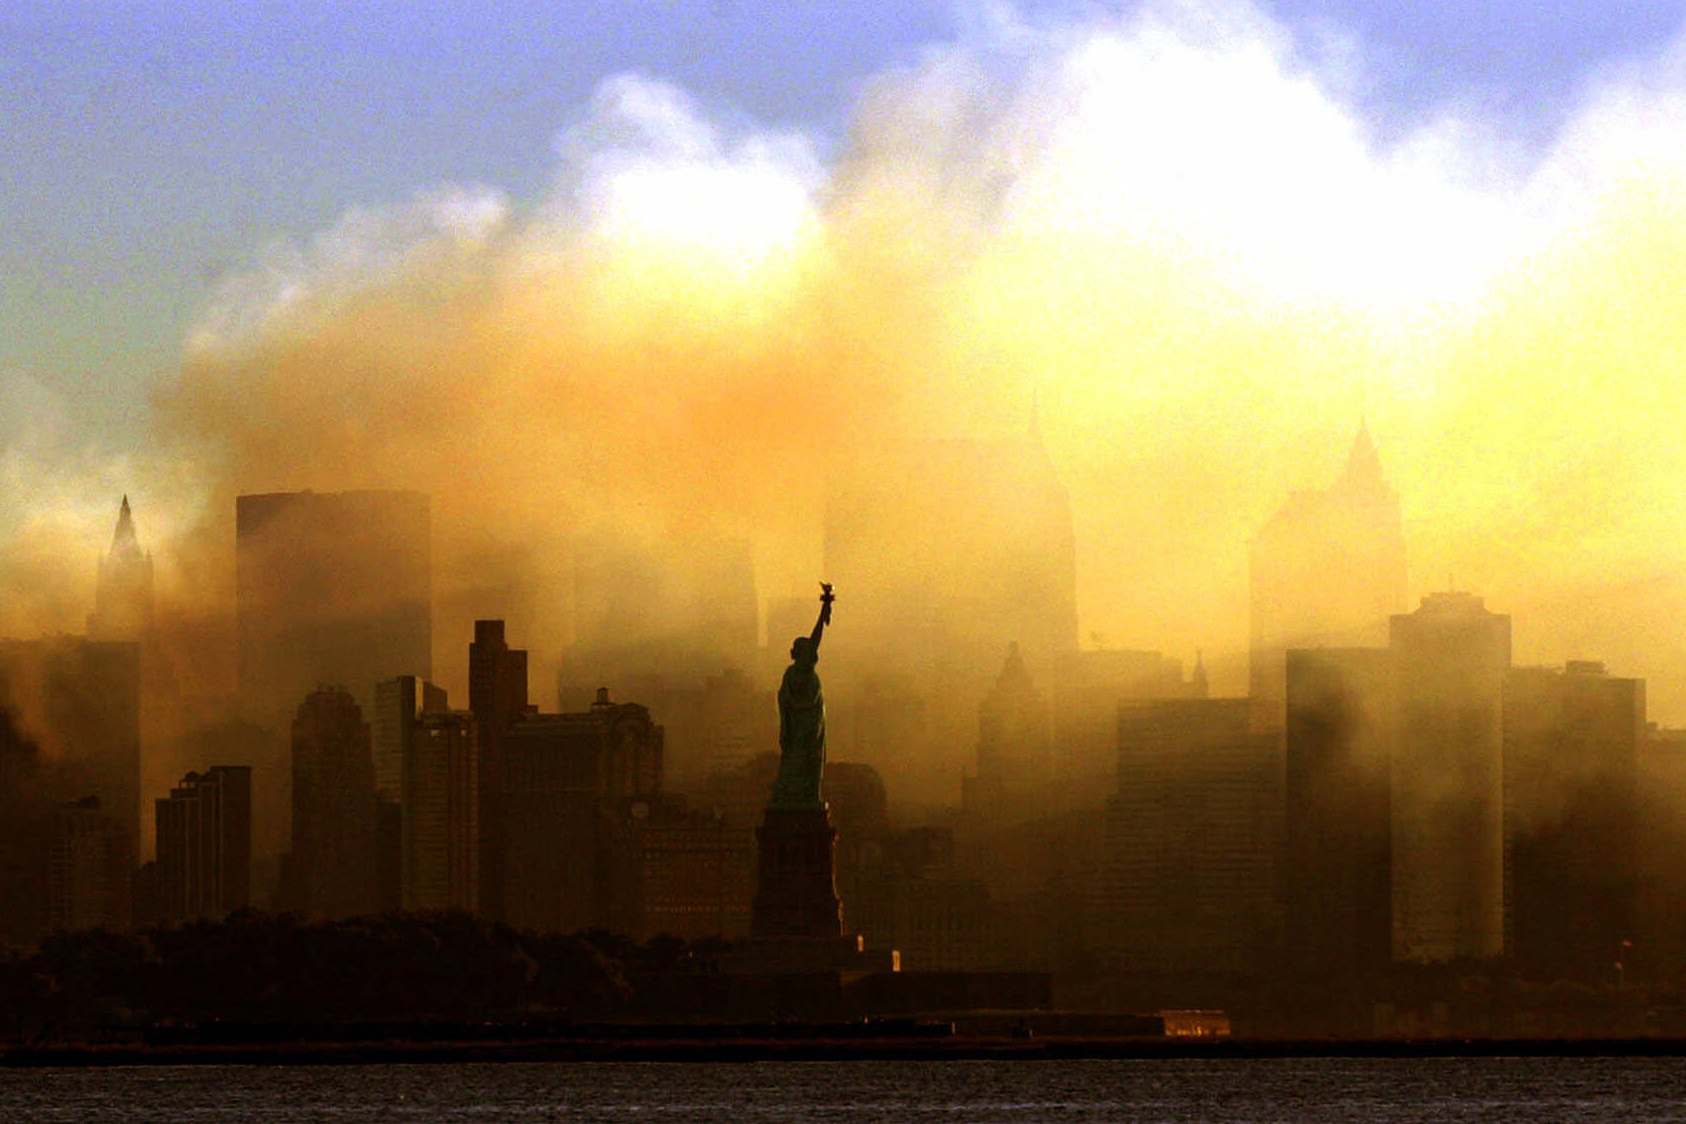 Sept. 11, 18 years later: Never forgotten